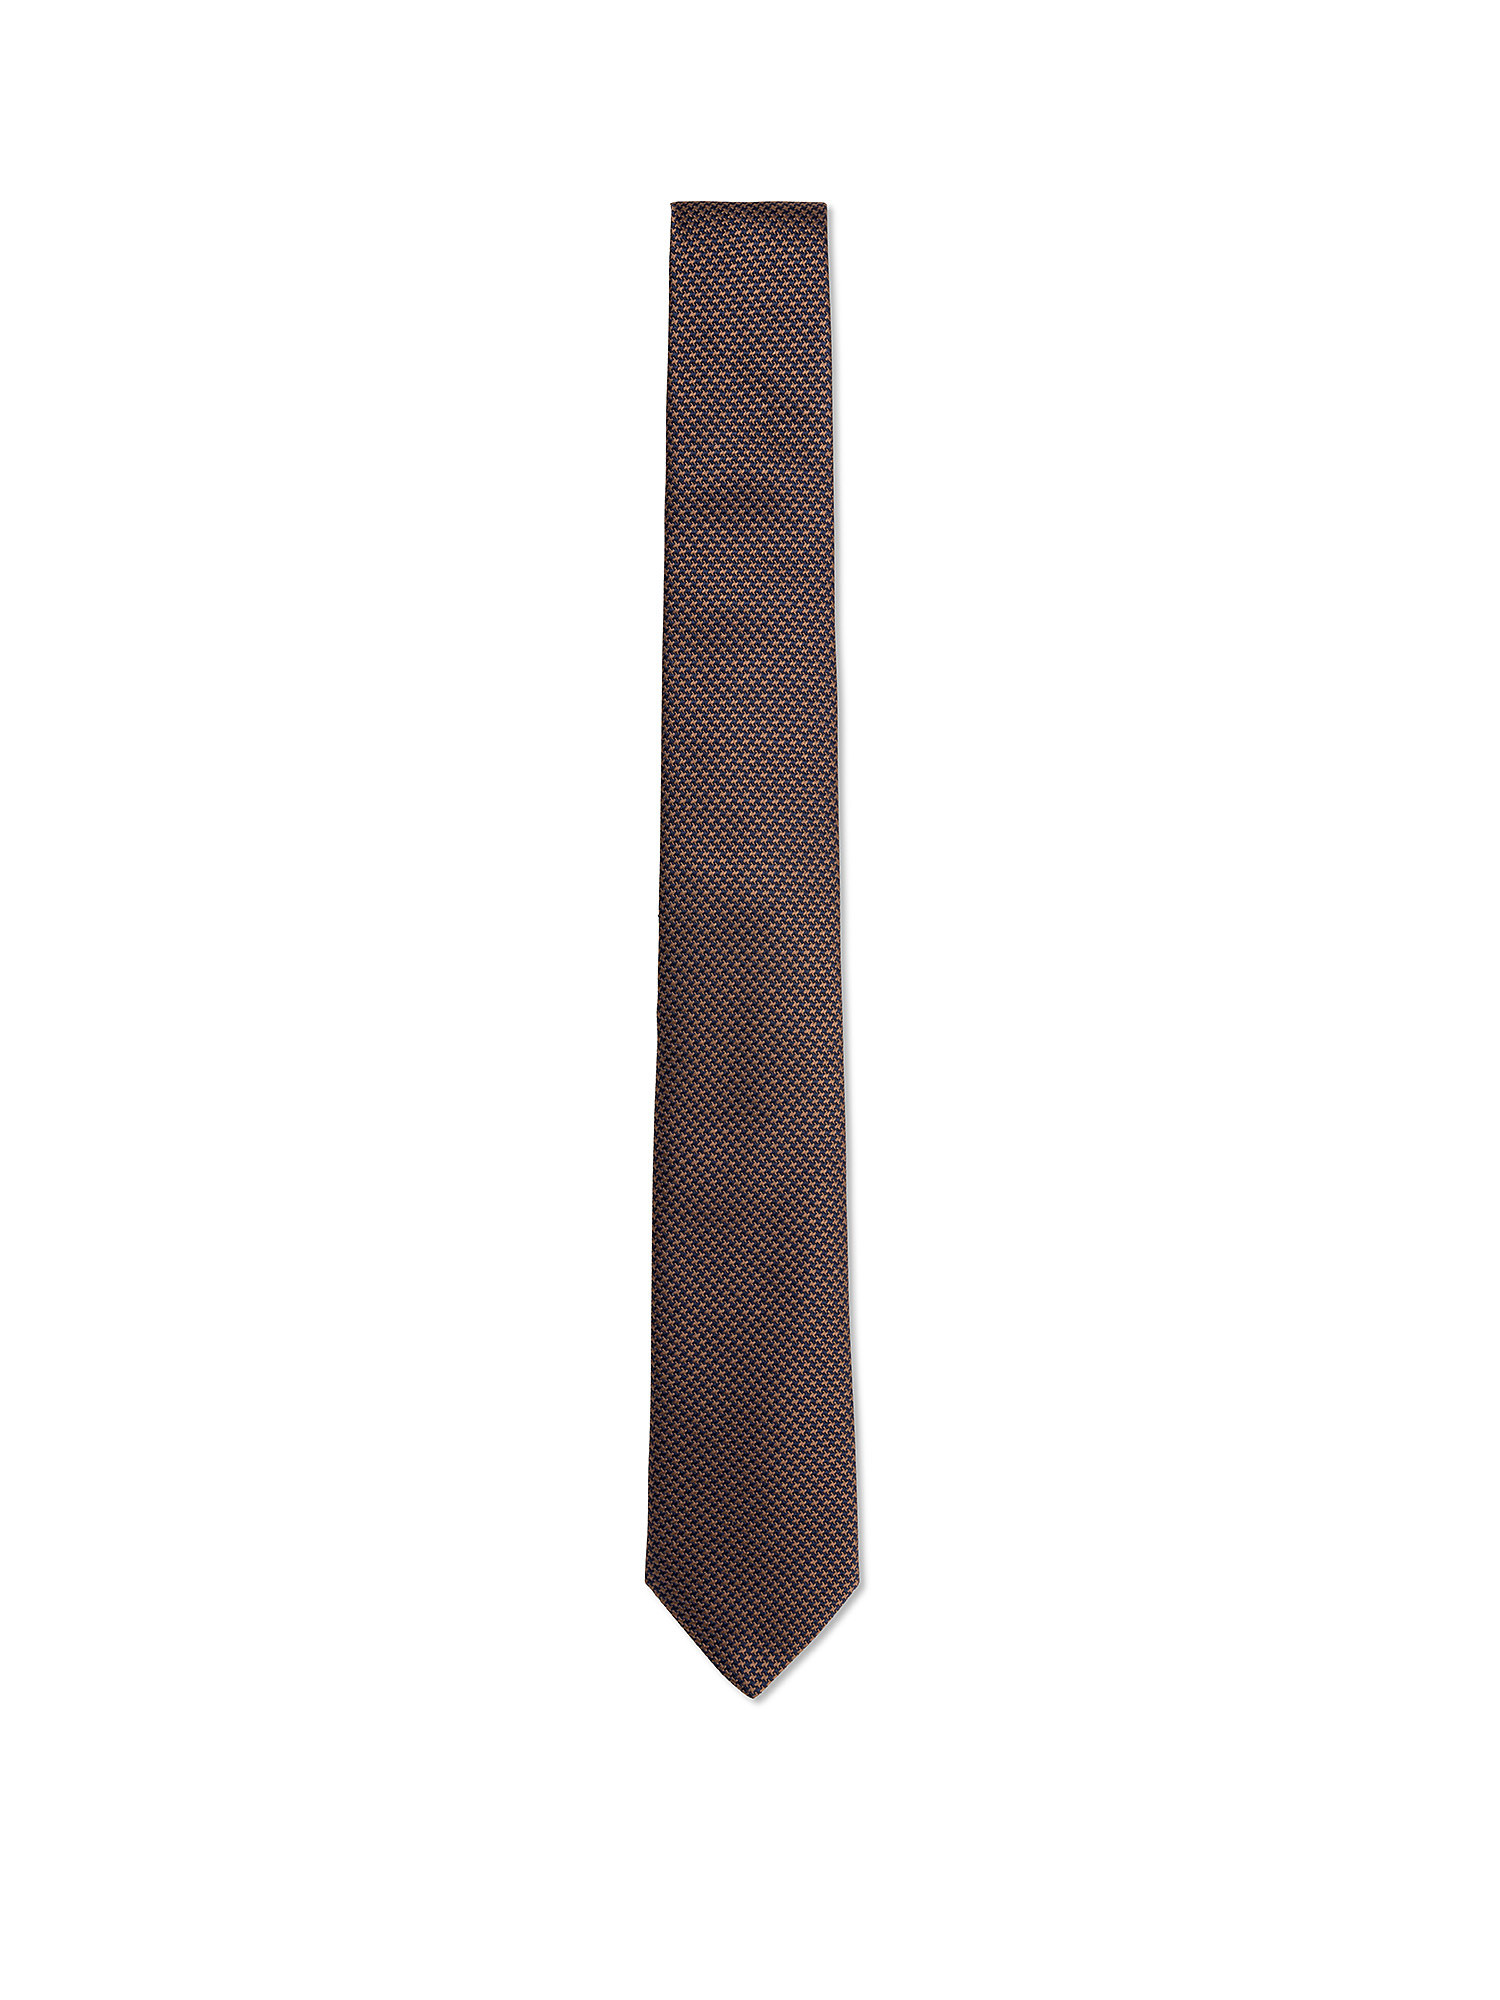 Cravatta in pura seta tinta unita, Marrone, large image number 0